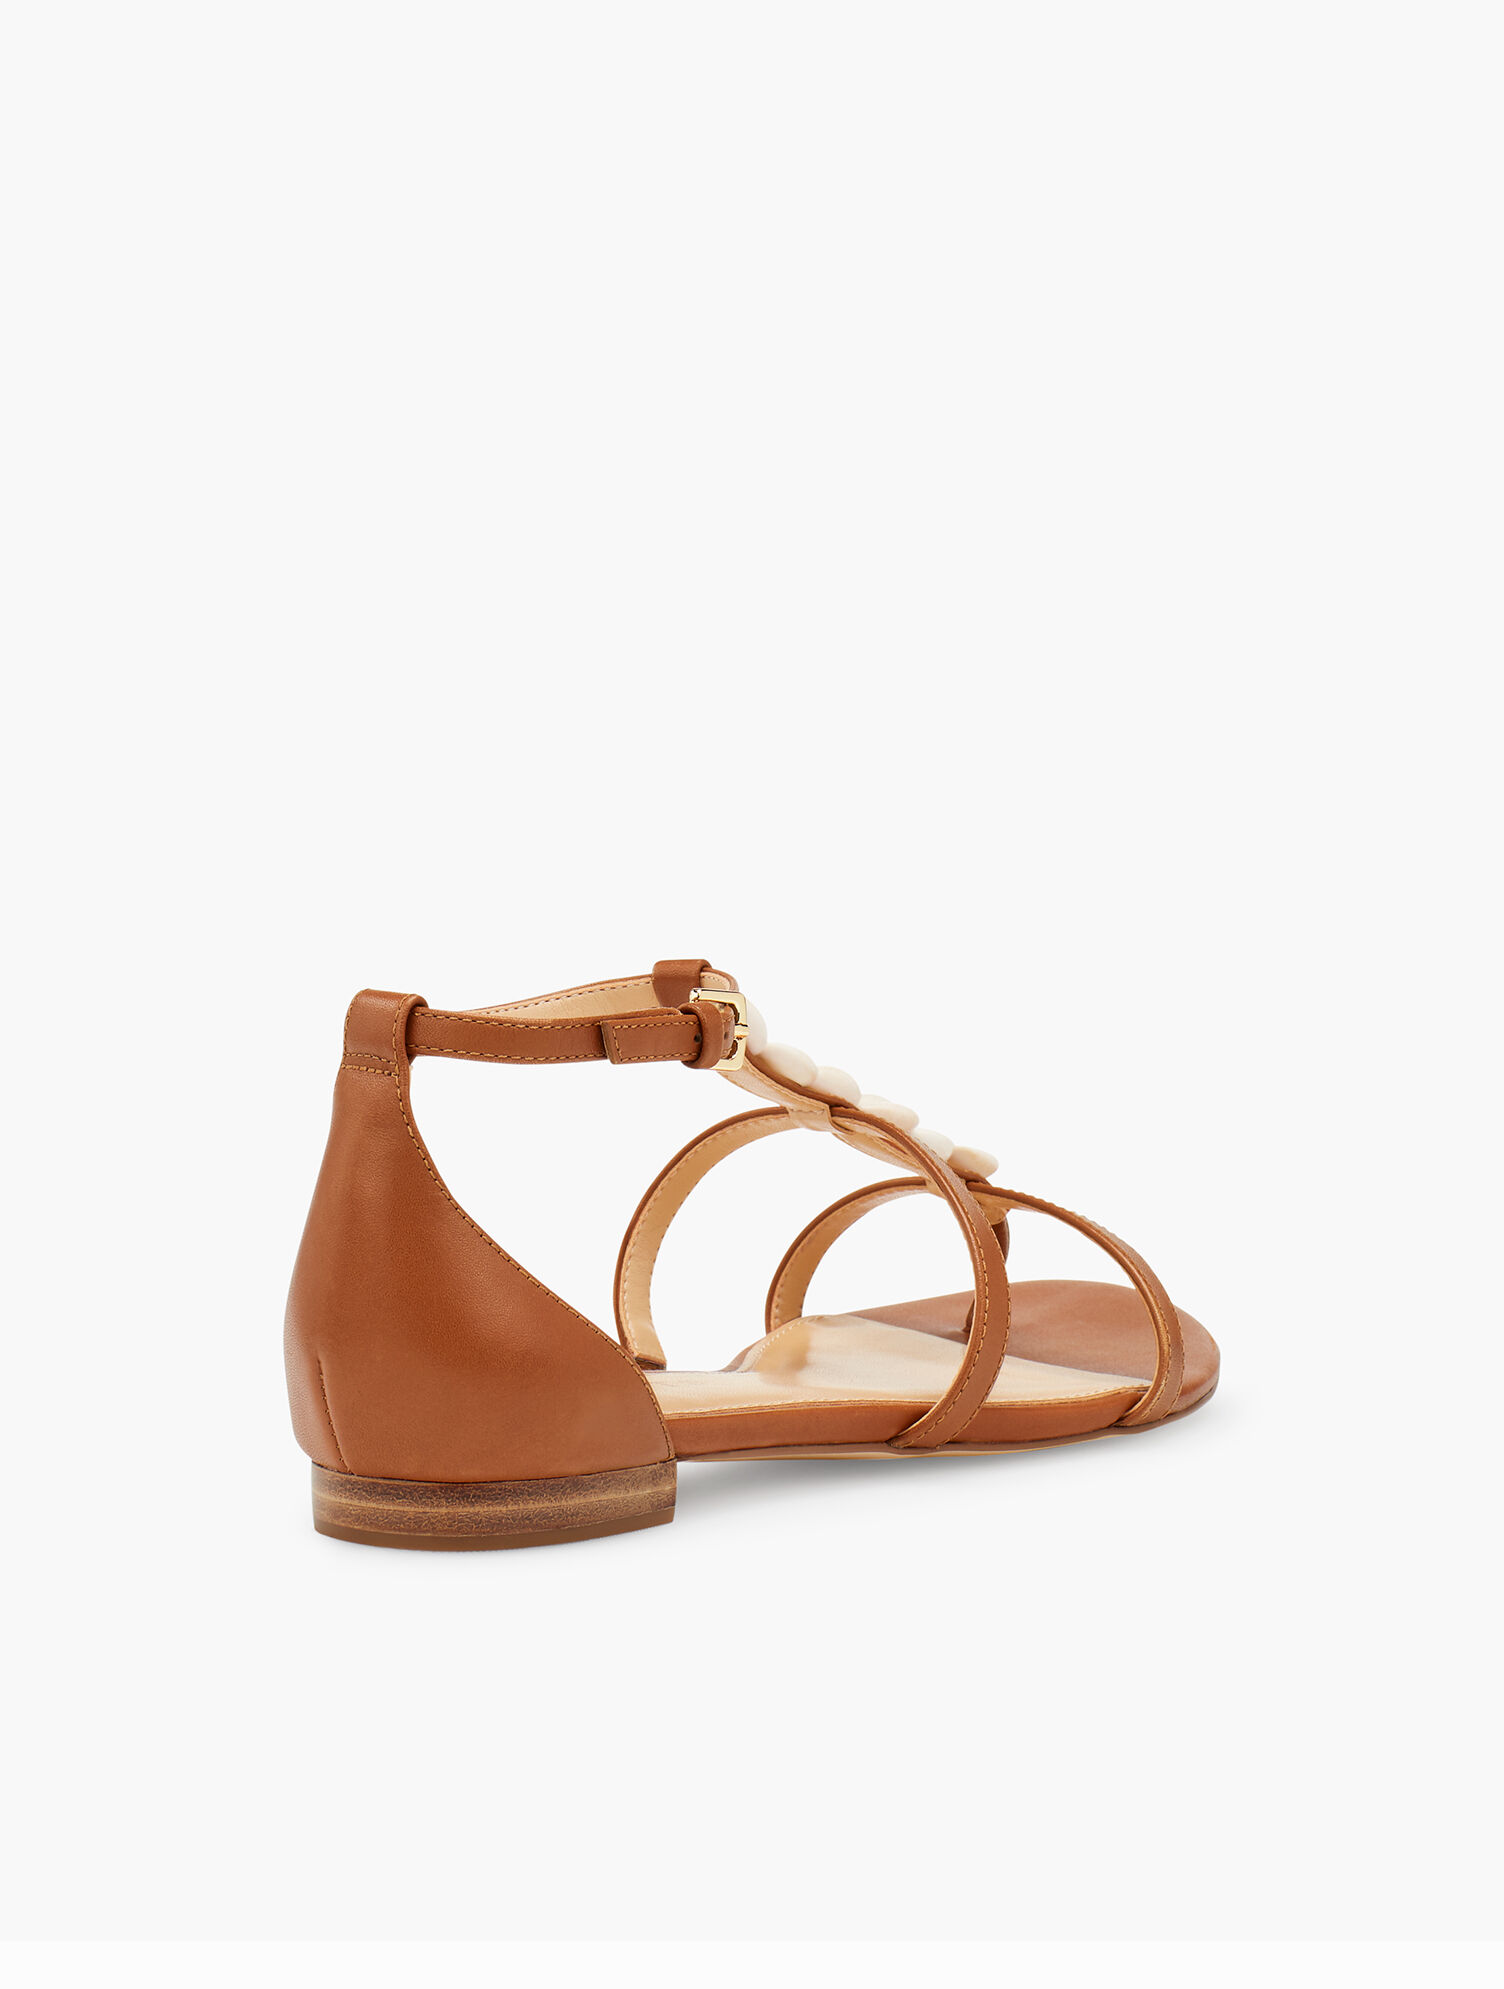 Keri Vachetta Leather Sandals | Talbots